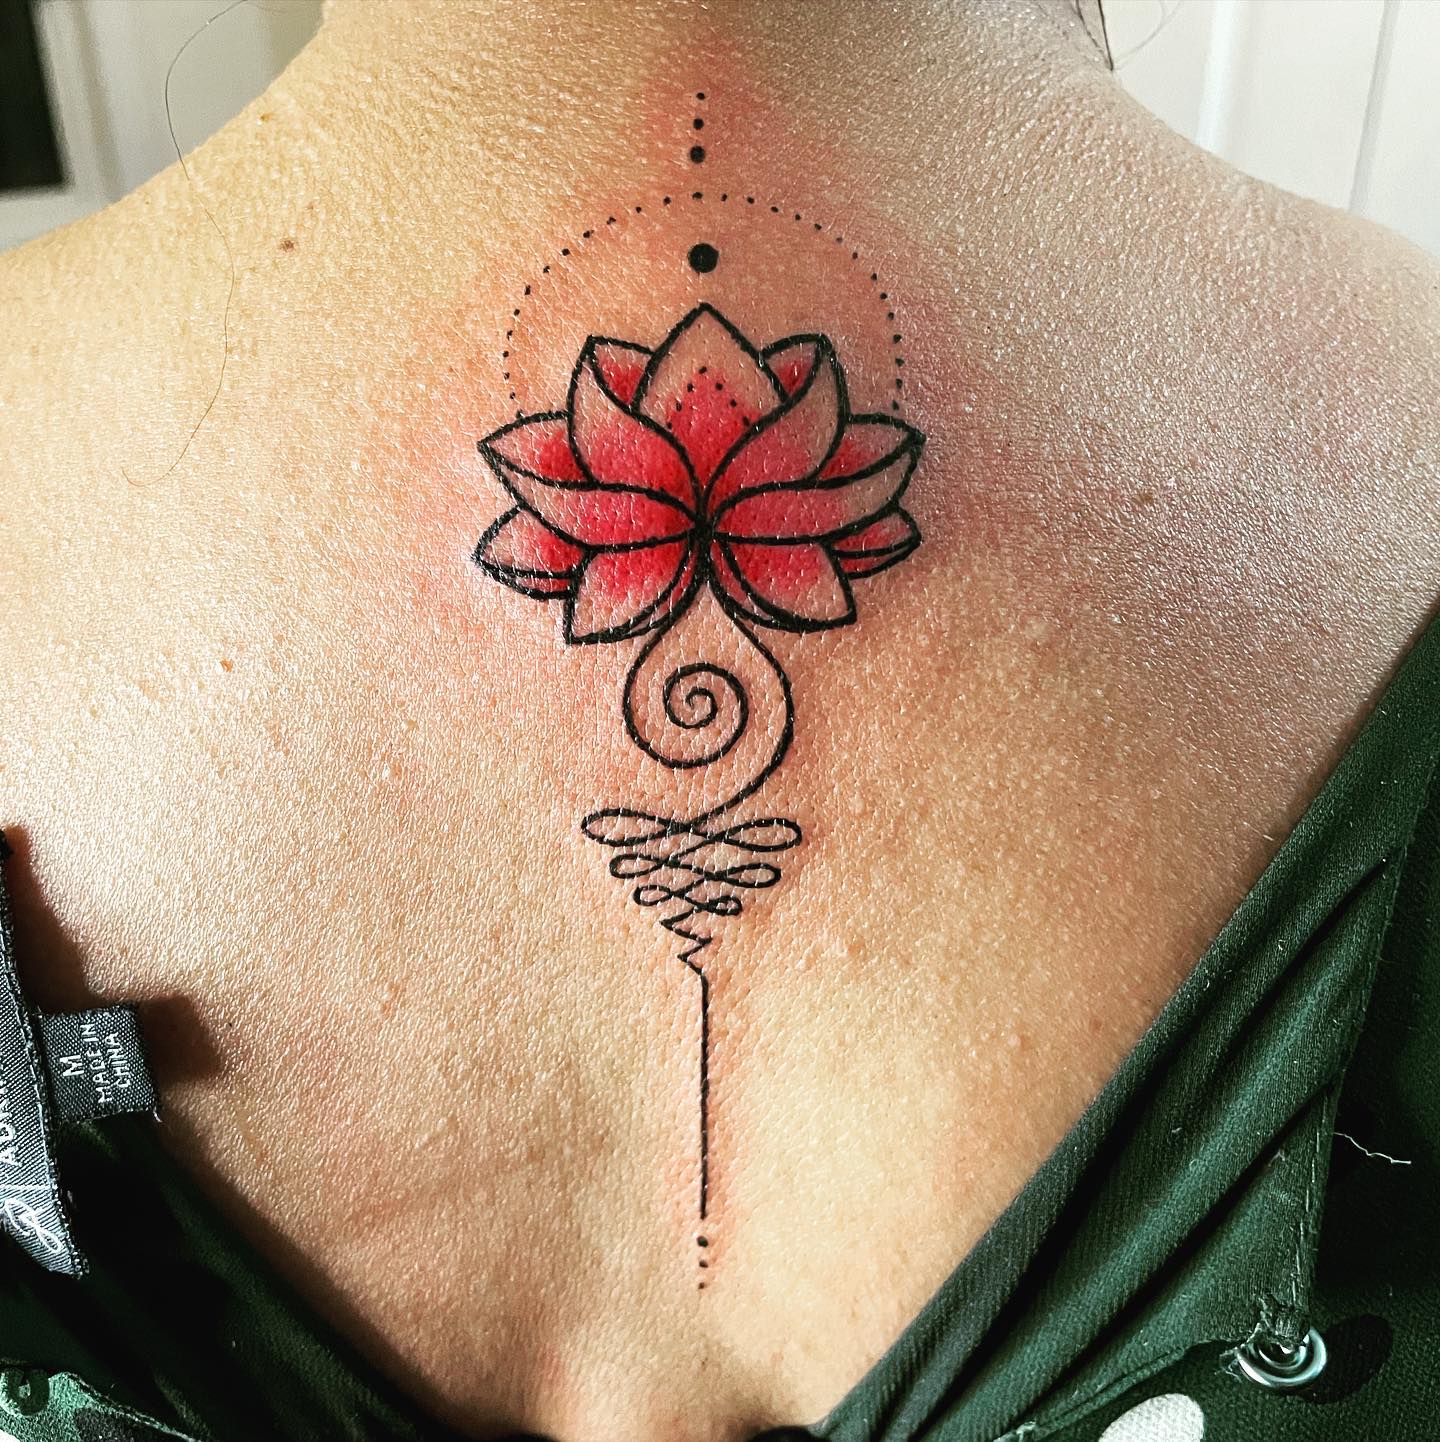 Tatuaje Unalome con una flor de Loto roja.